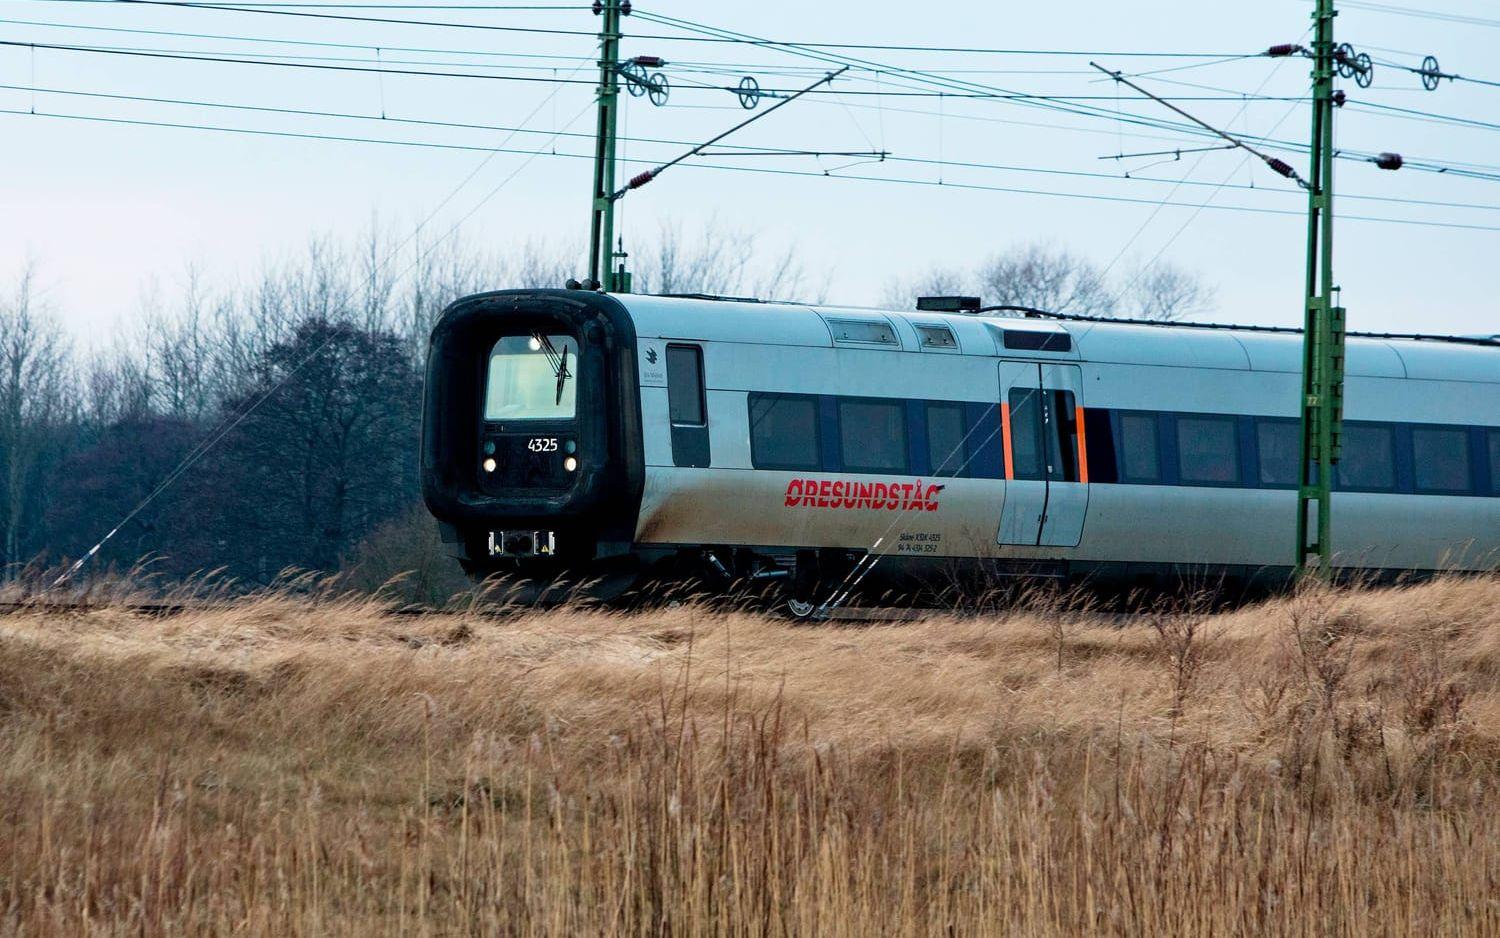 Snabbt framåt. Sedan den 11 januari 2009 rullar Öresundstågen i Sydsverige och Danmark i regional regi. Sträckan från Göteborg till ­Helsingör trafikeras av 111 ­Öresundståg, varav 13 ägs av Hallandstrafiken. Tågen, som har en maxhastighet på 180 km/h, bemannas av Transdev och DSB (Danmark).